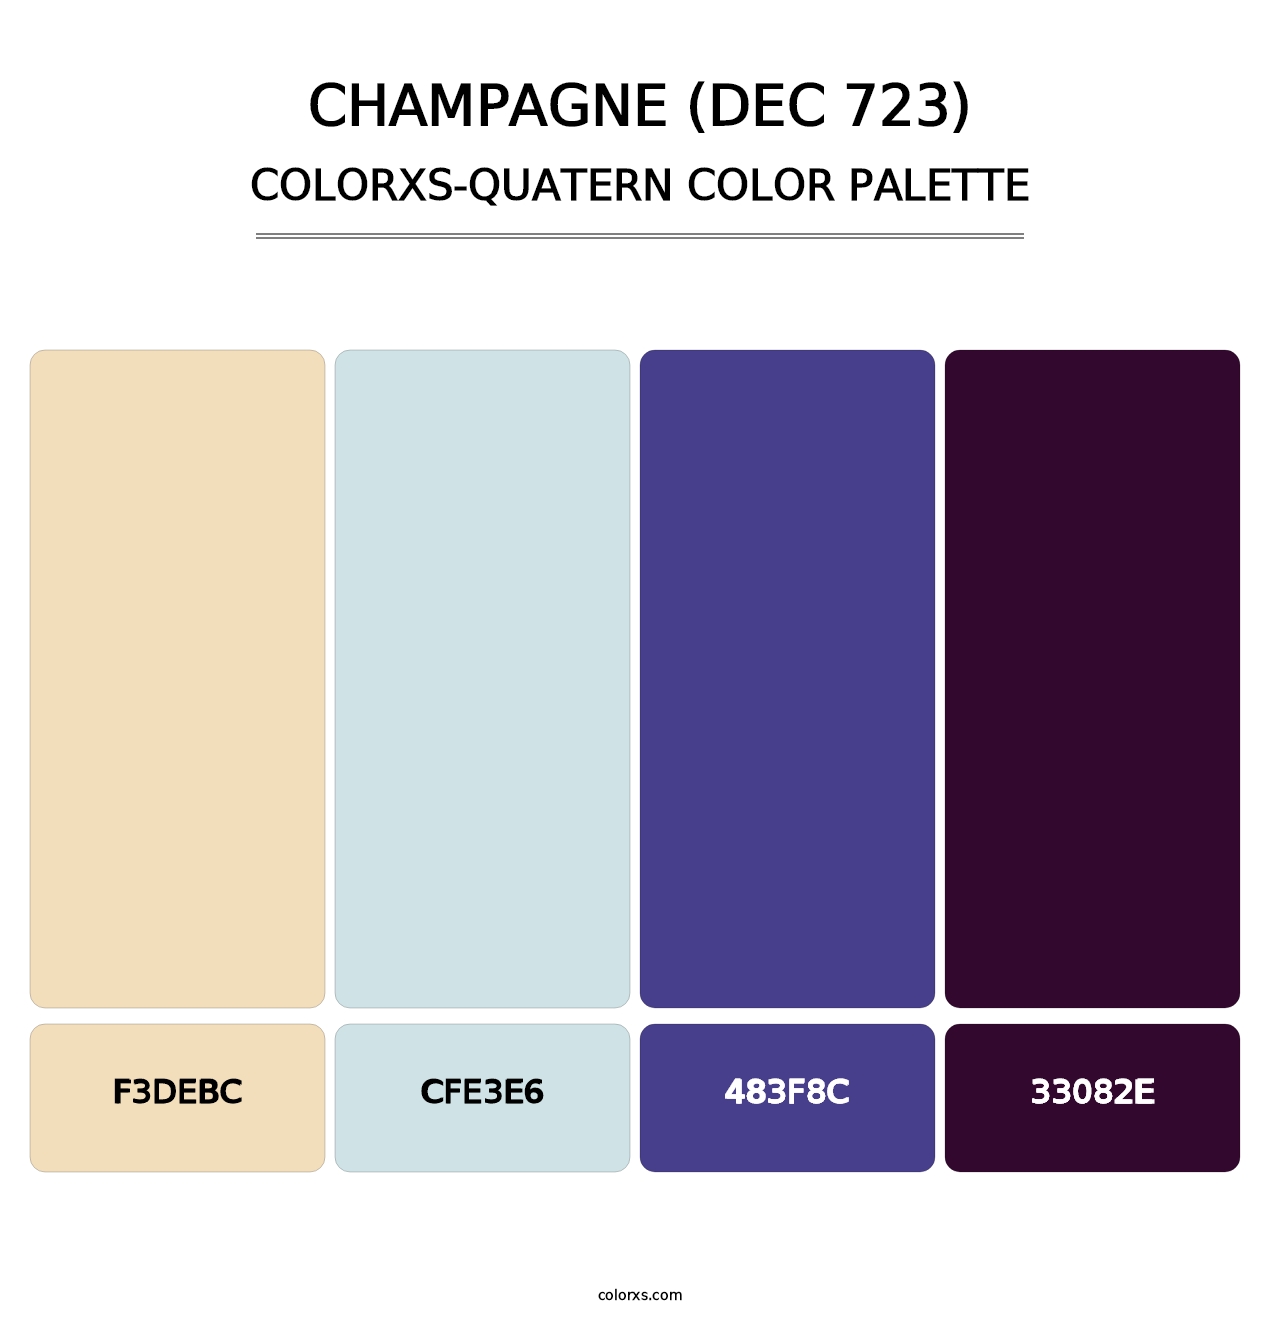 Champagne (DEC 723) - Colorxs Quatern Palette